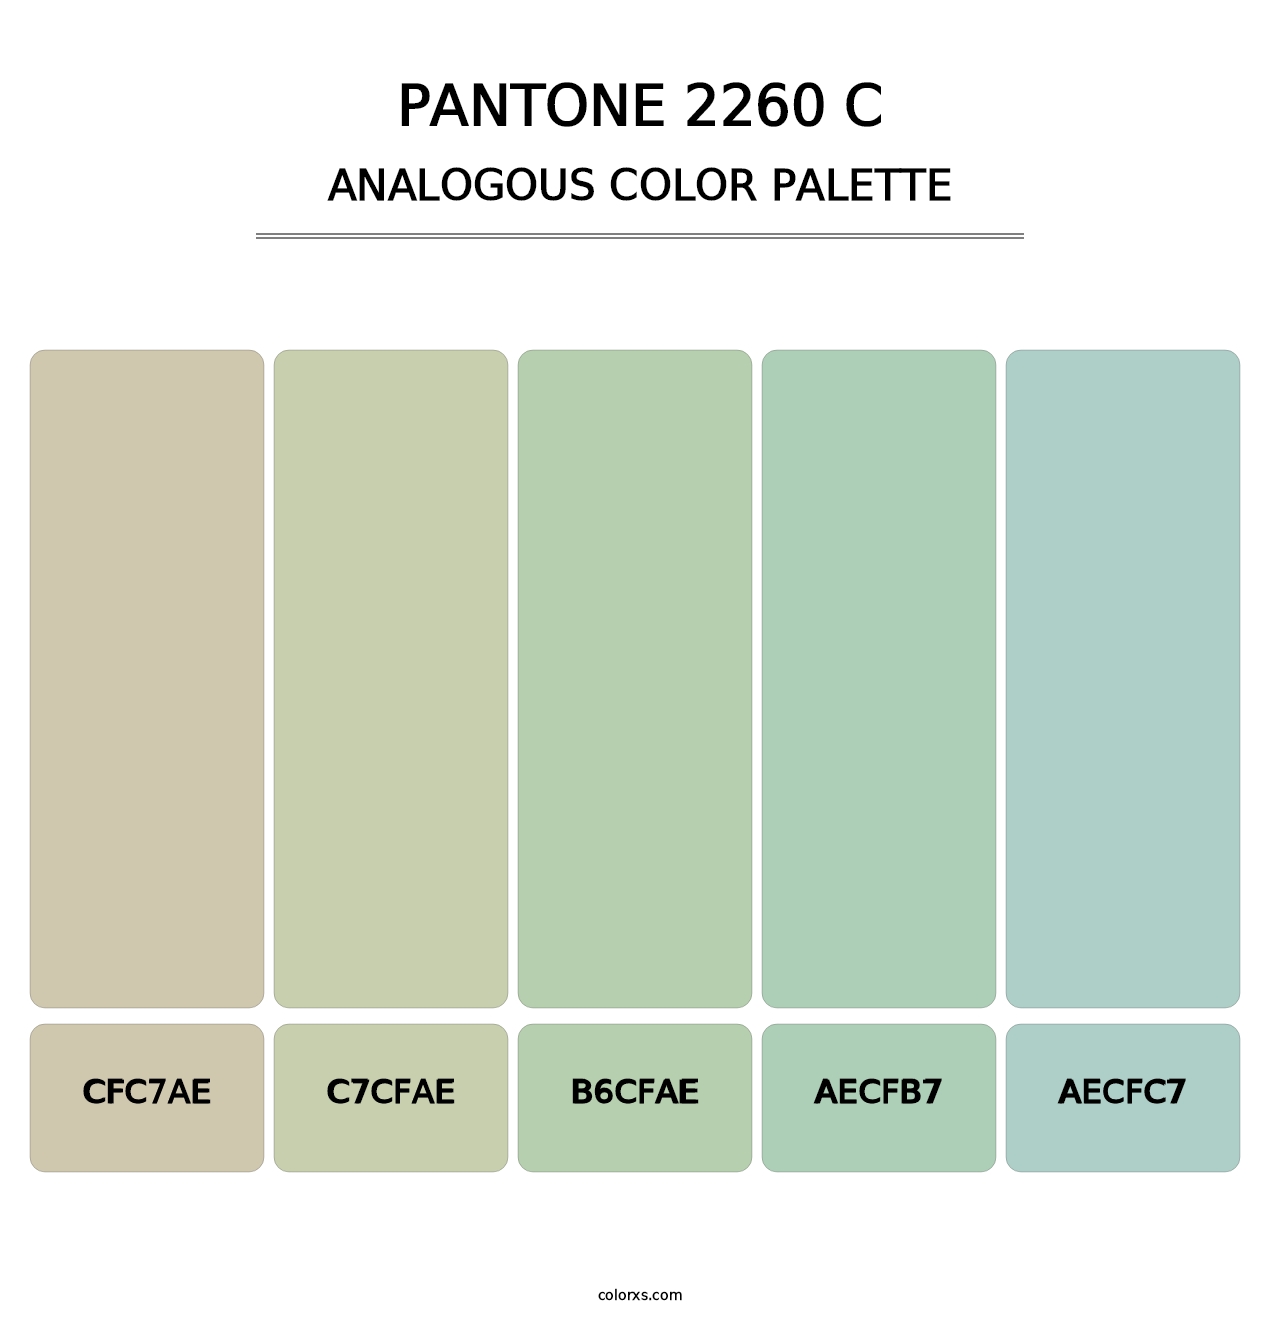 PANTONE 2260 C - Analogous Color Palette